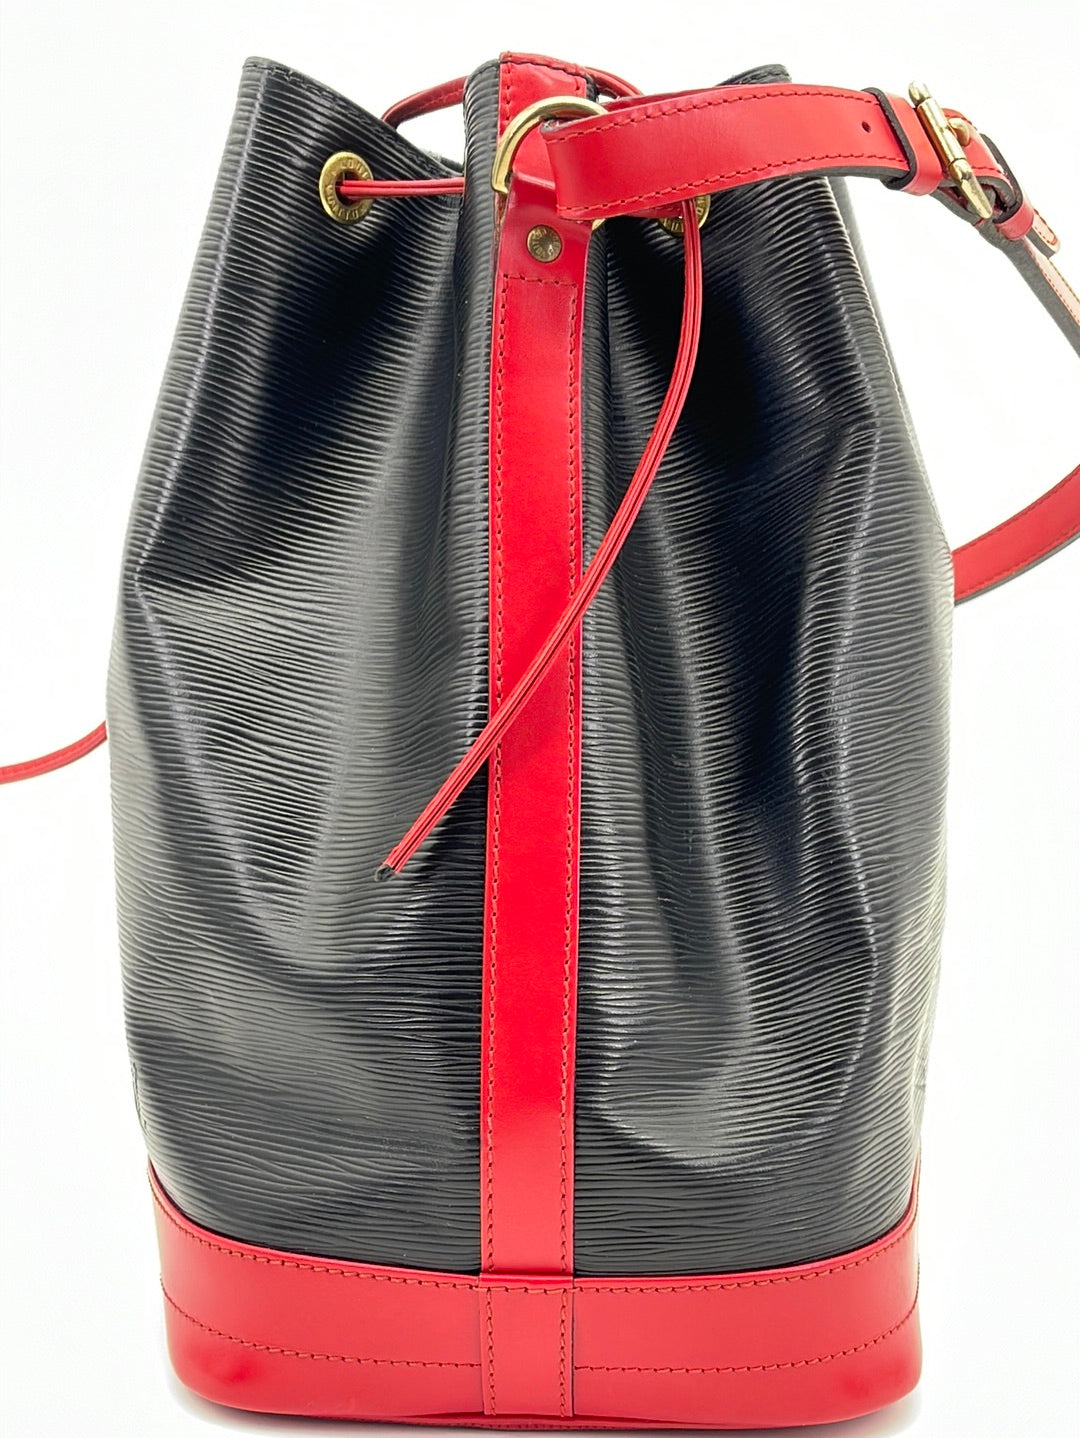 History of the bag: Louis Vuitton Noé